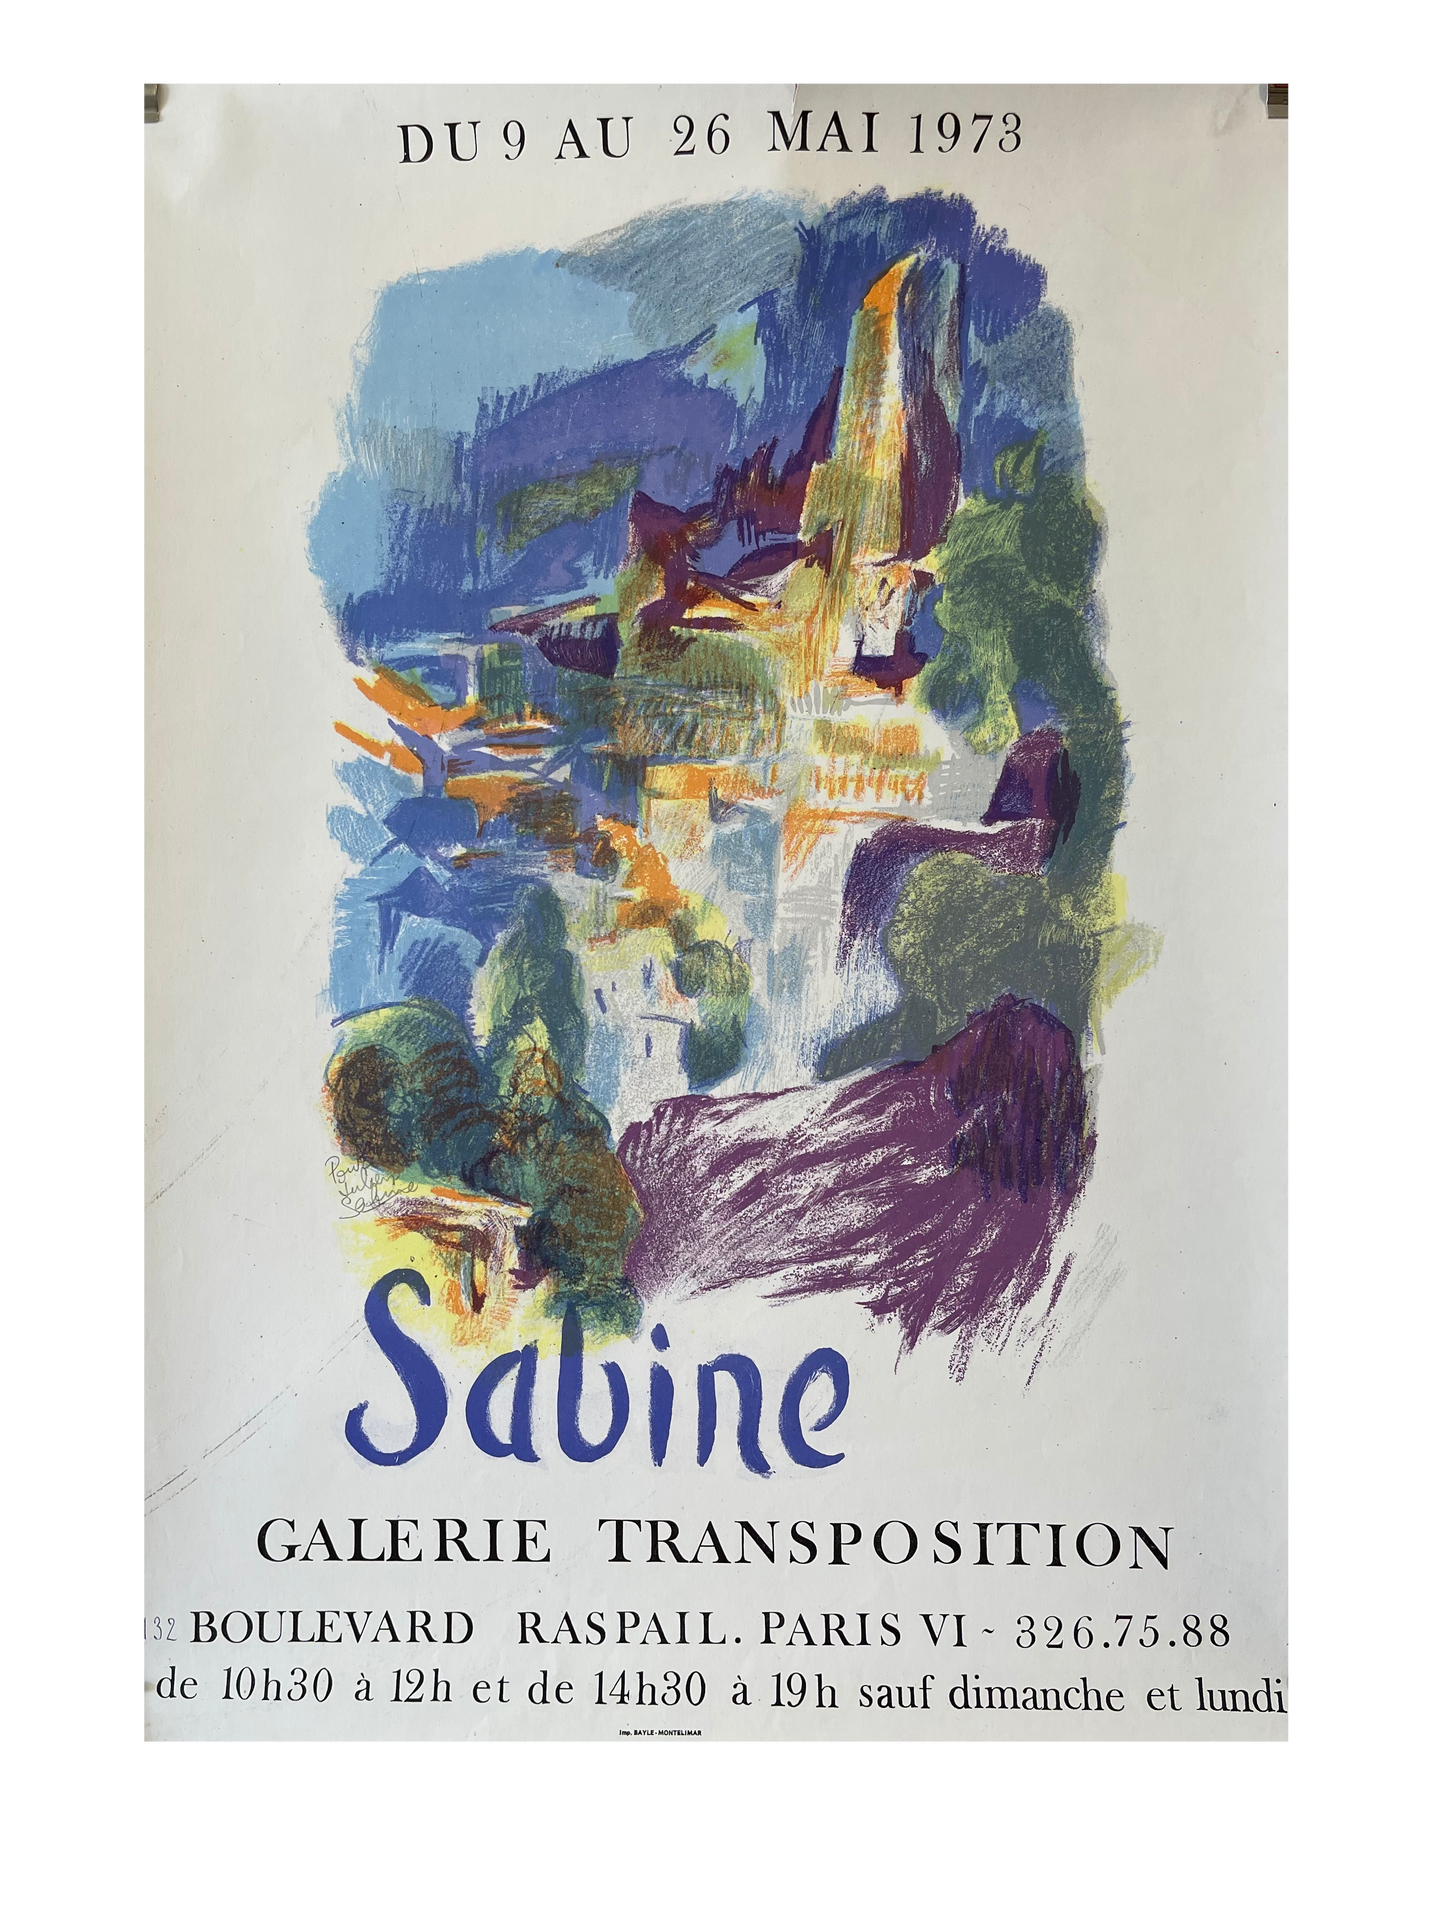 Sabine Galerie Transposition